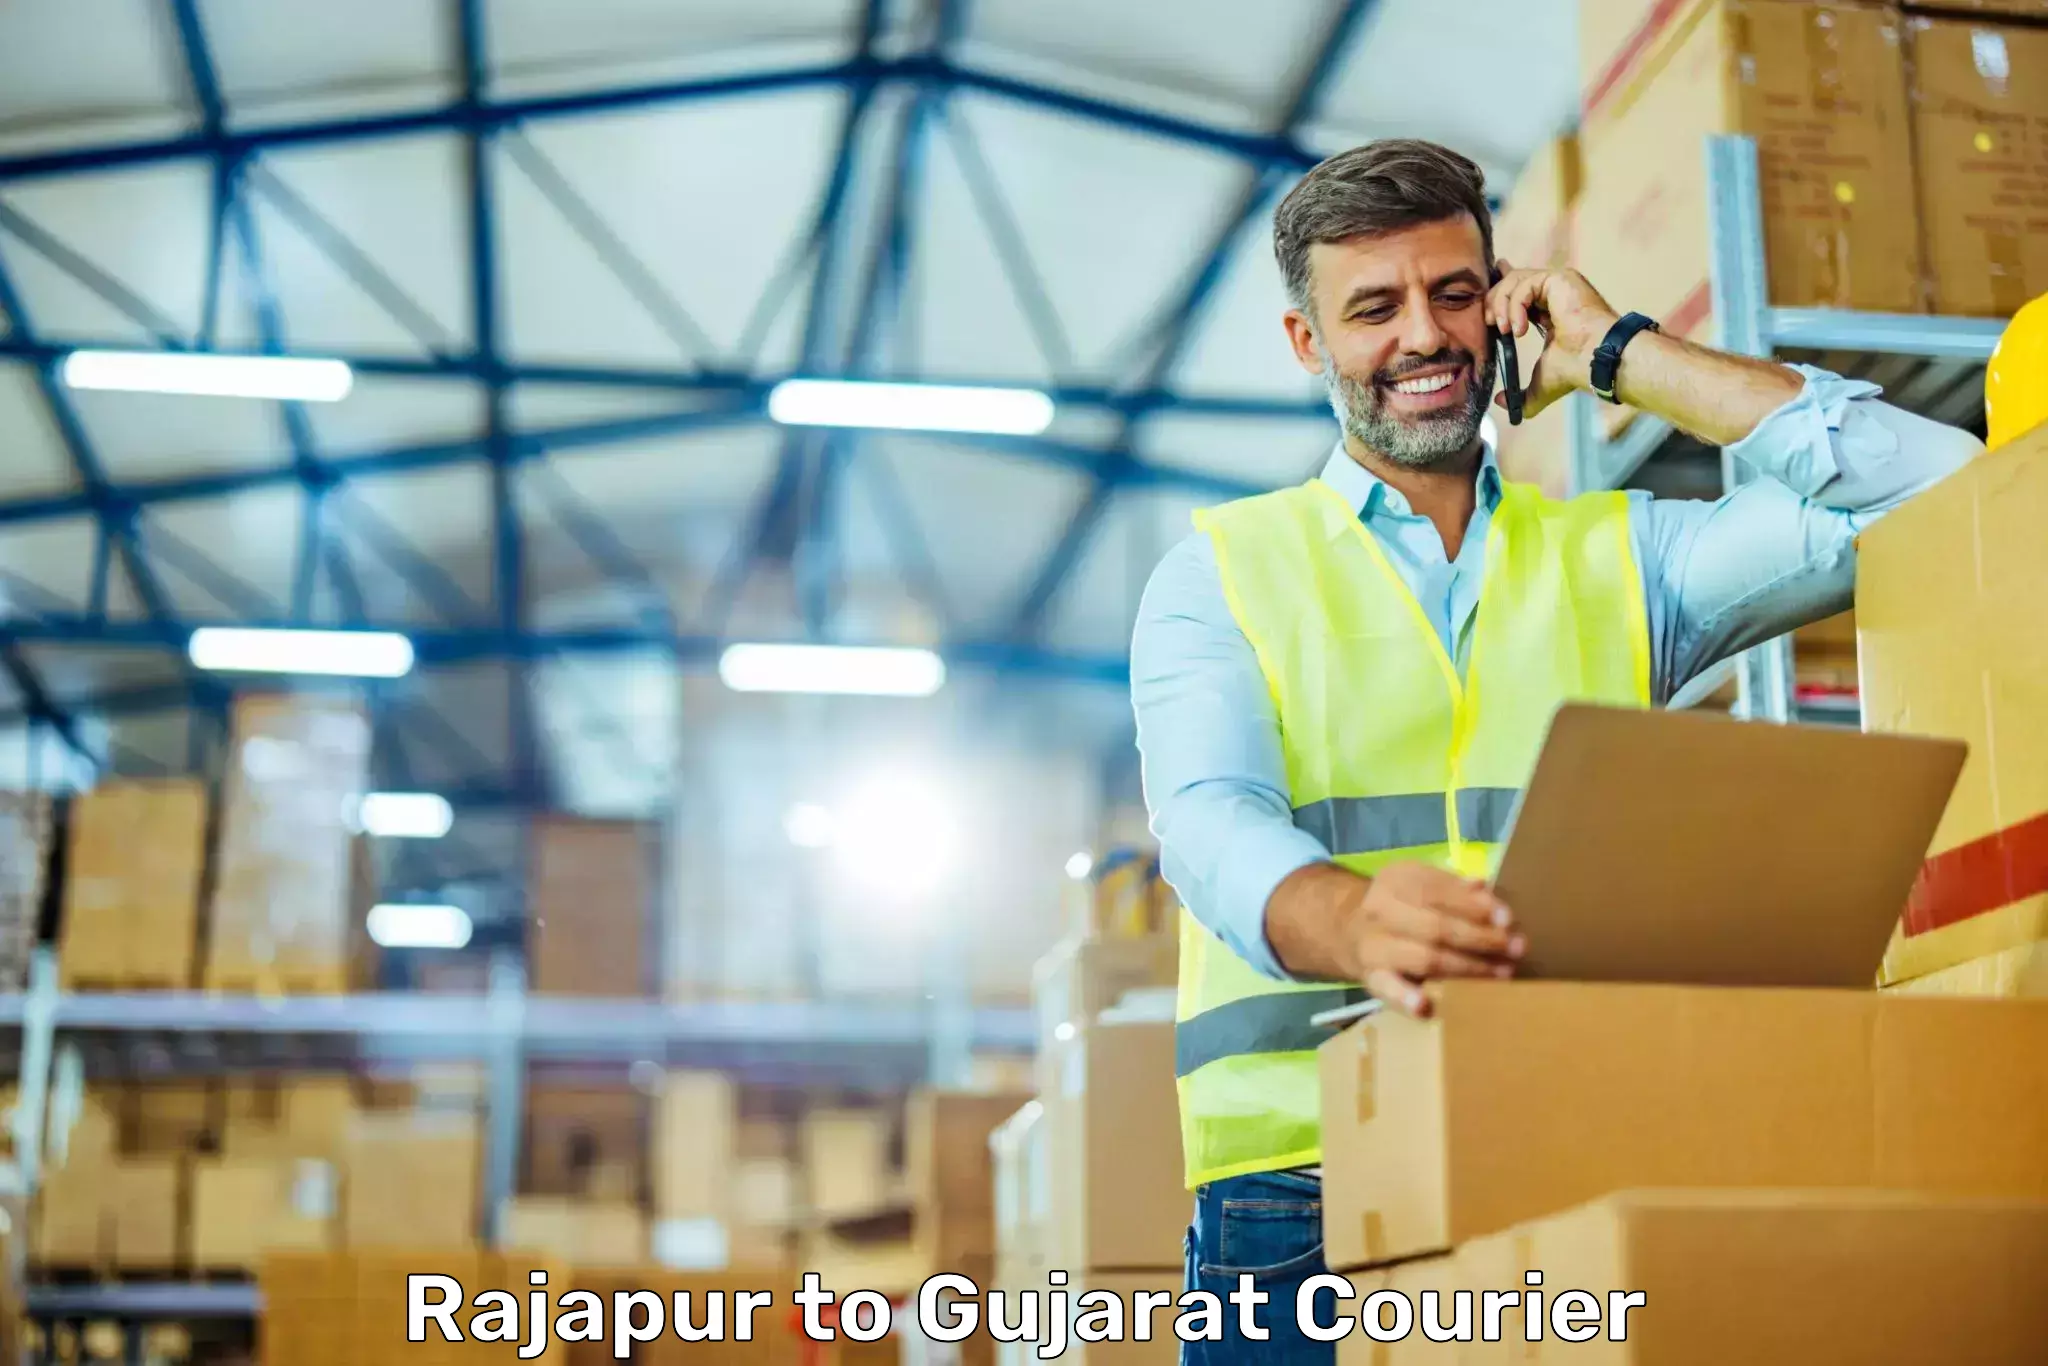 Cash on delivery service Rajapur to Rajkot